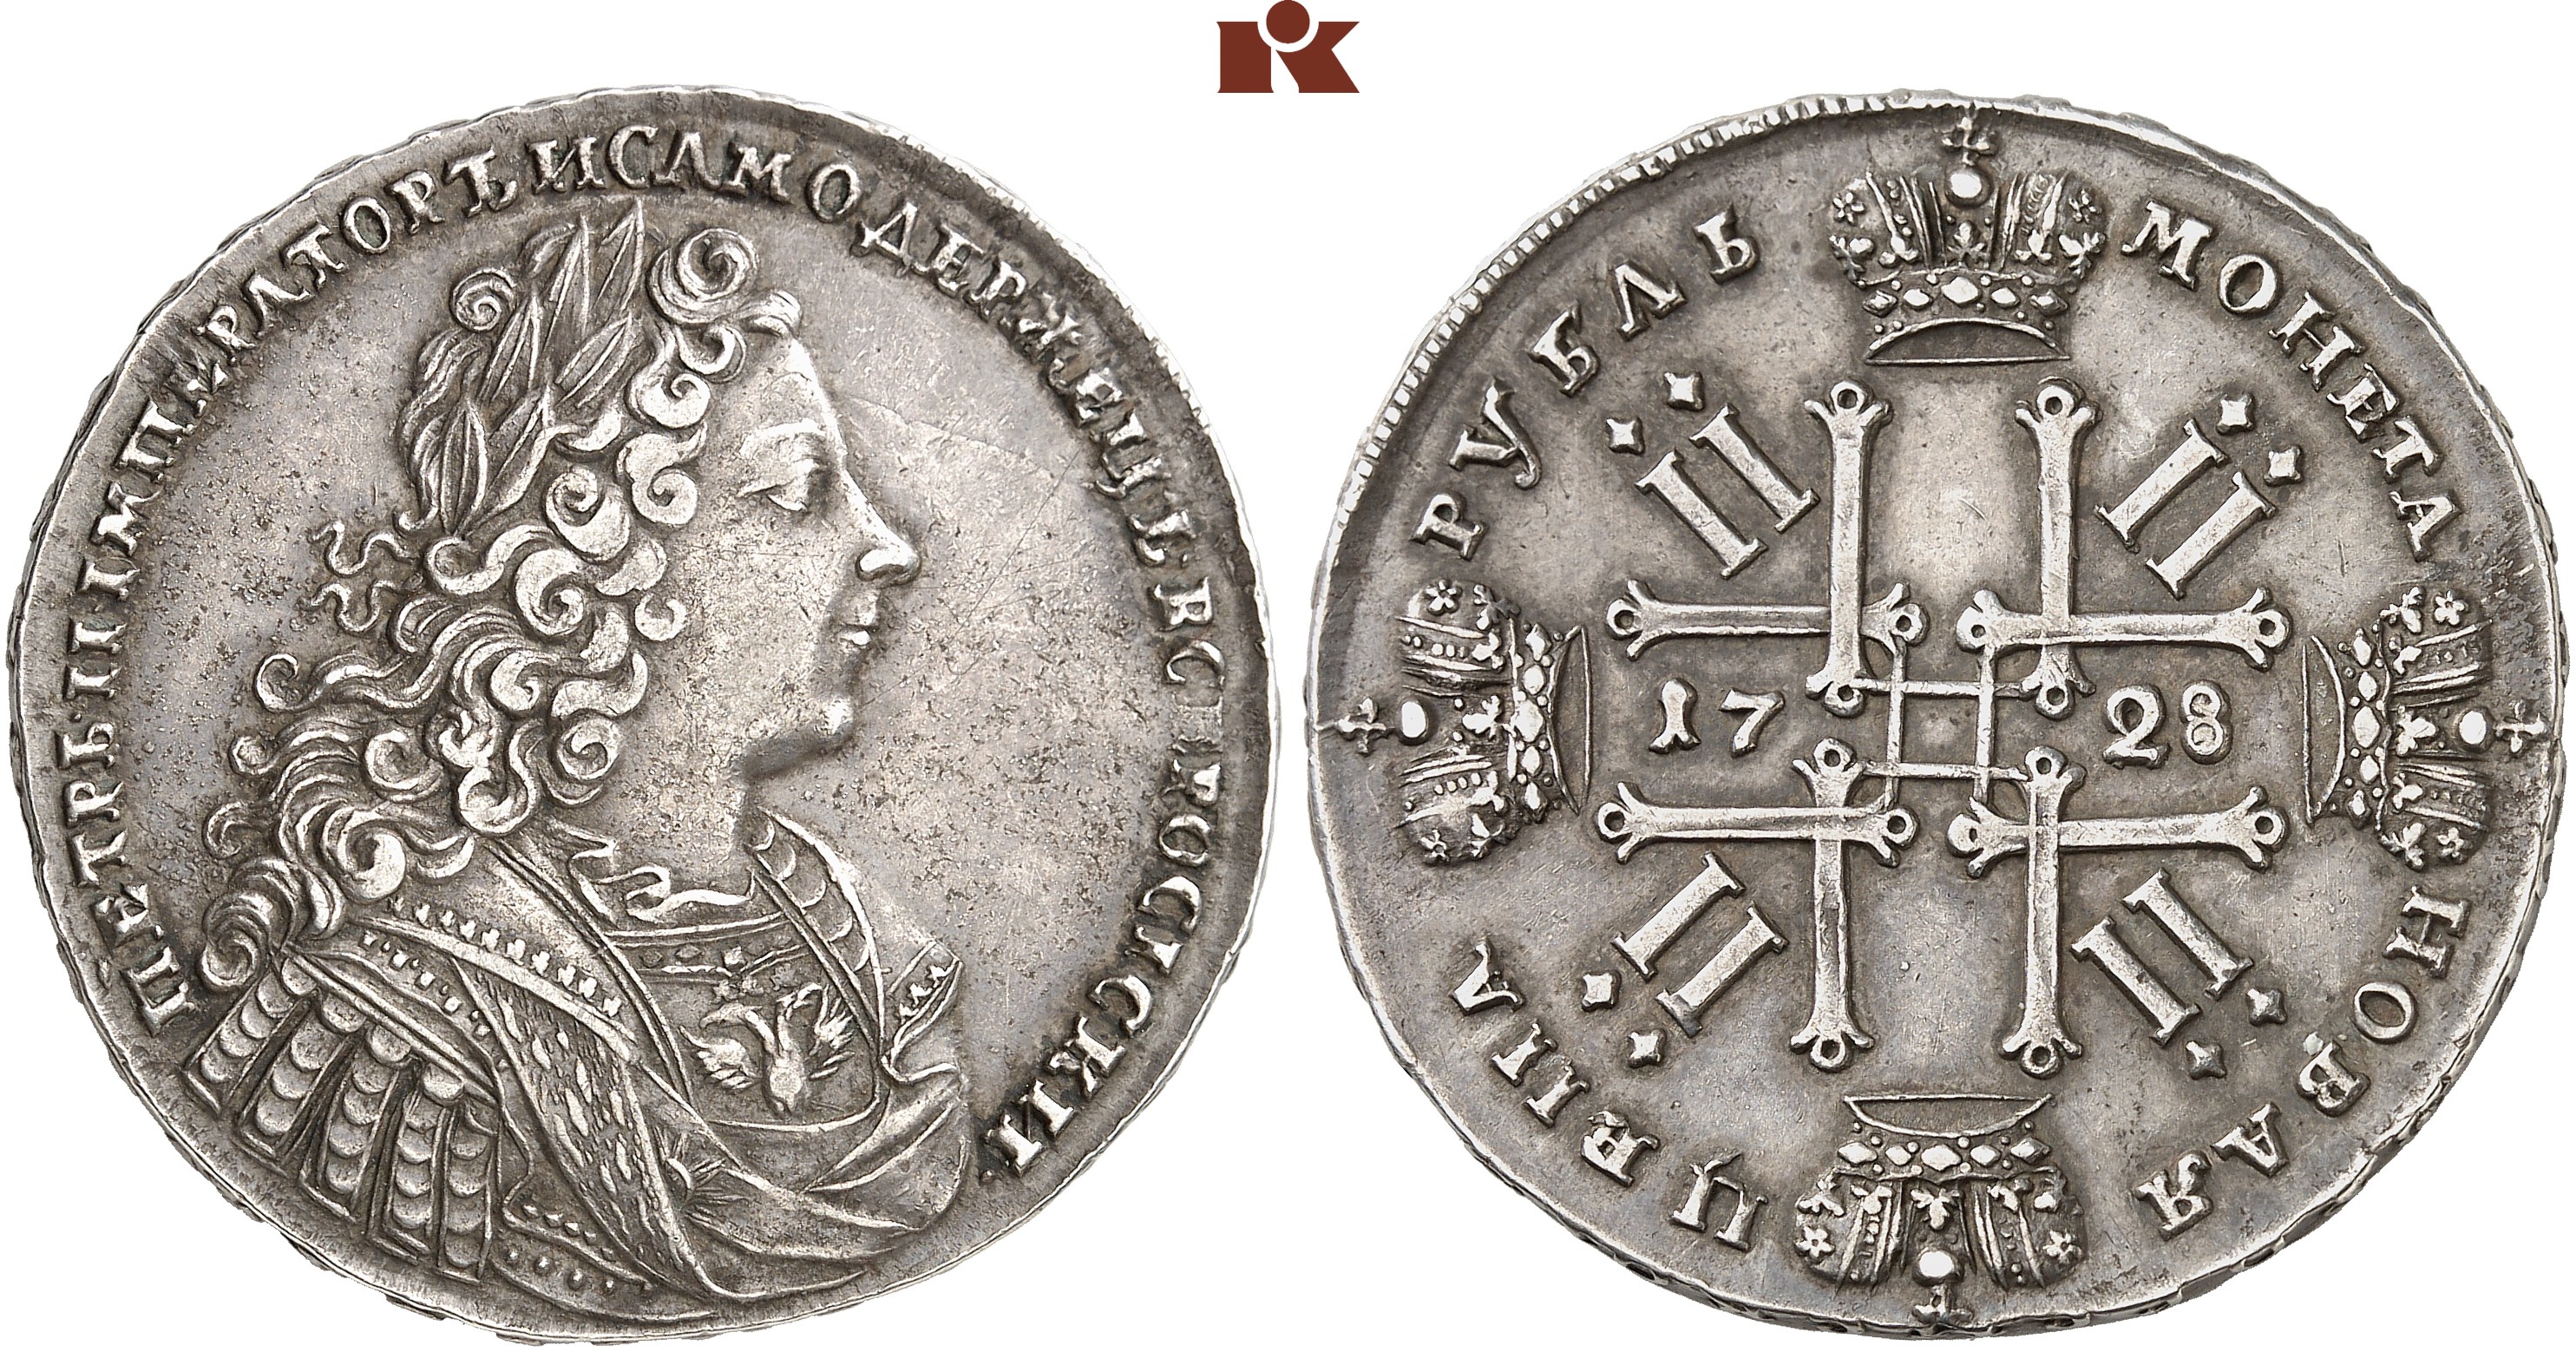 Назовите императора изображенного на монете впр. Монета 1729 года 1 рубль гурт. Монеты 1729 рубль гурт. Монеты Петра 2.